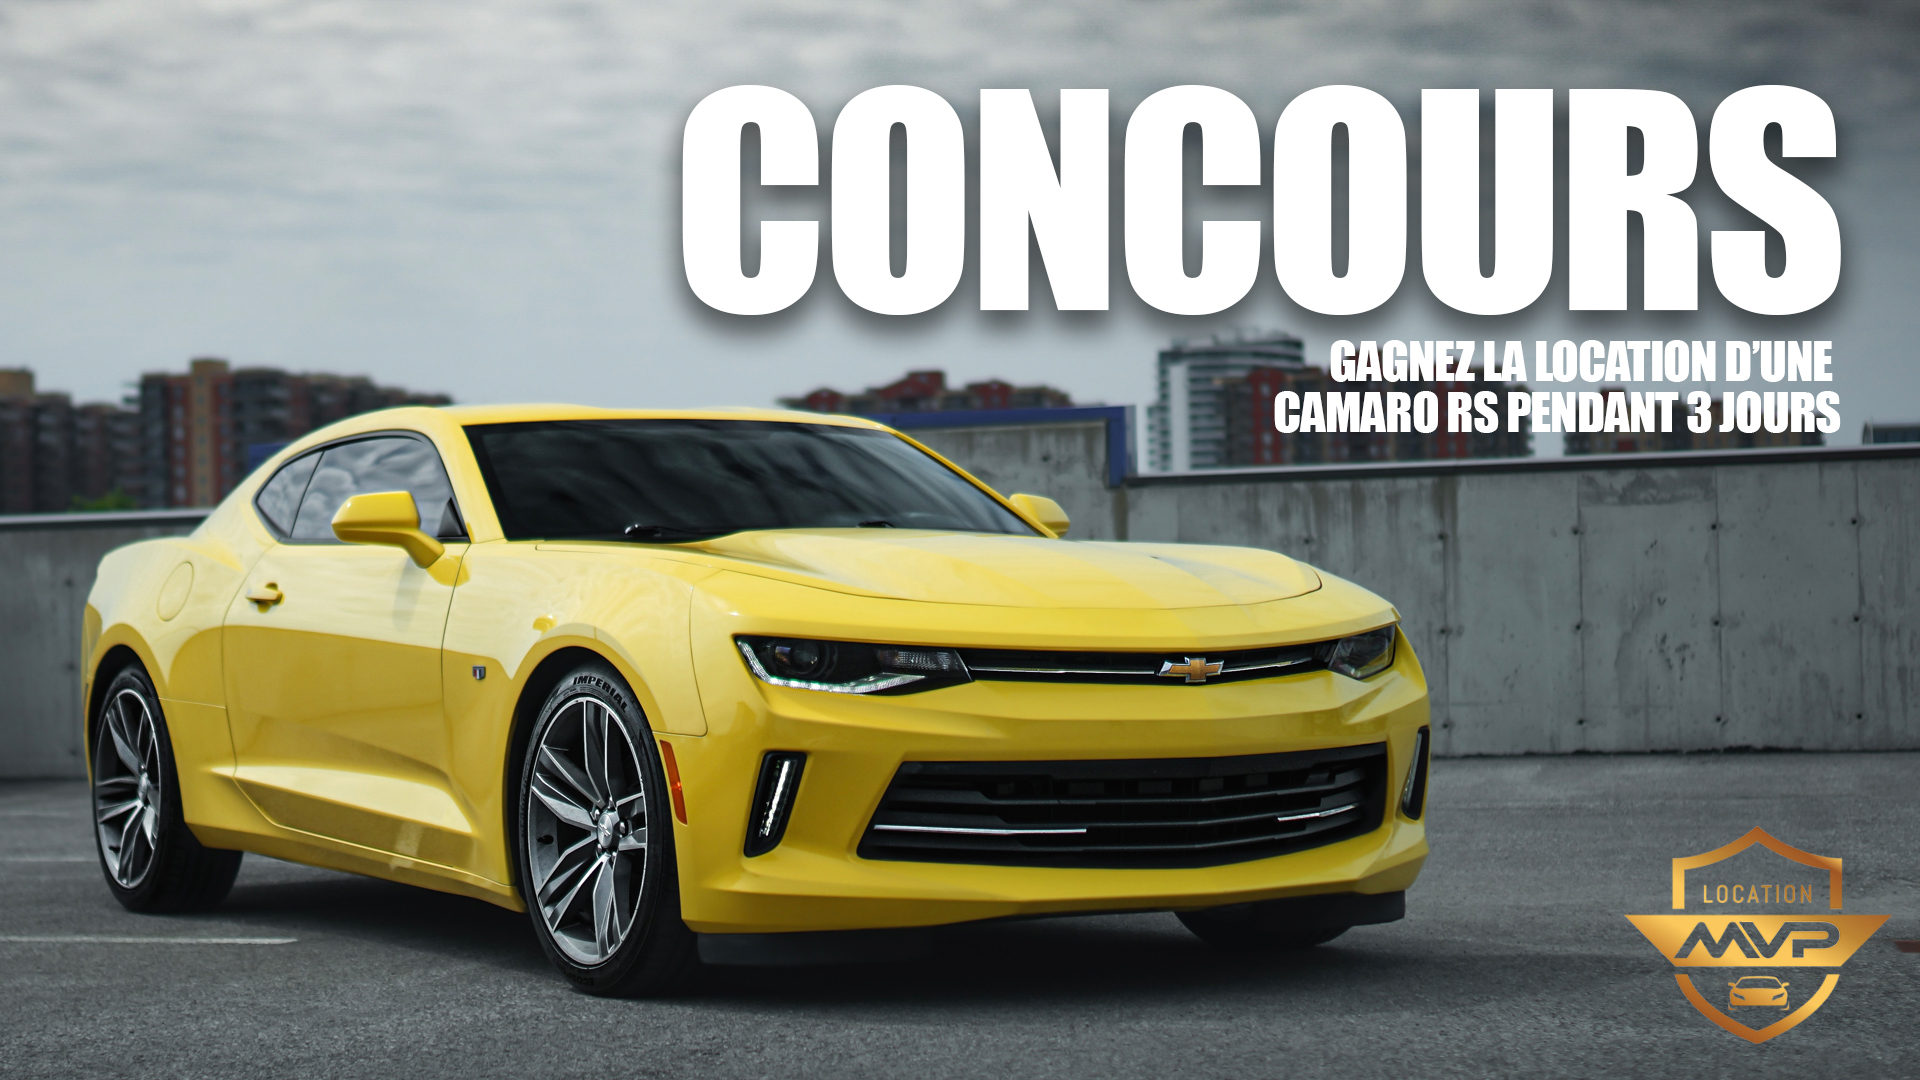 Concours GAGNEZ la Location de notre Chevrolet Camaro RS pendant 3 Jours!